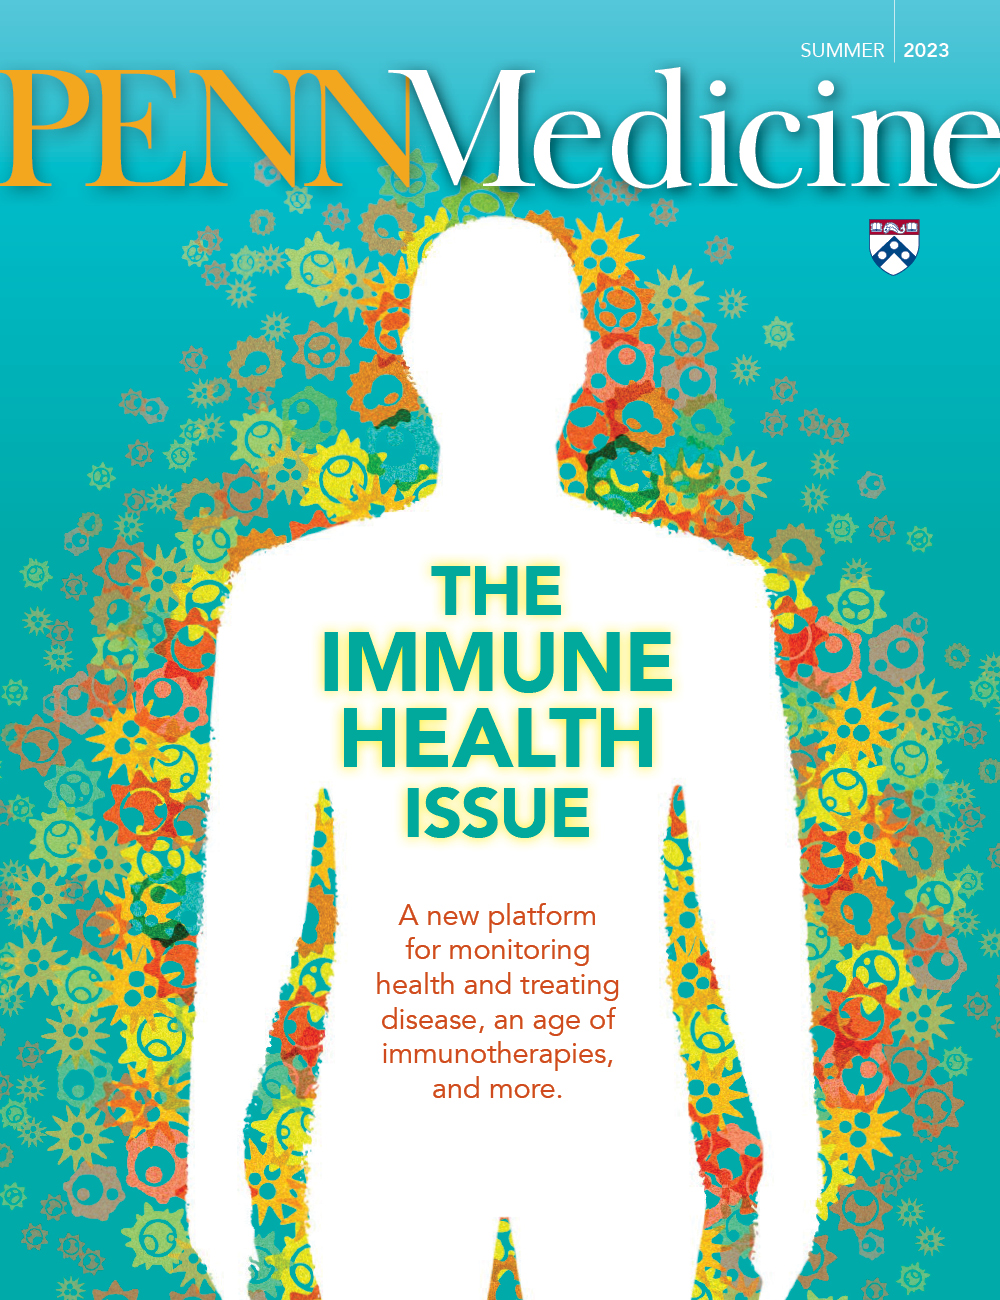 Cover art for the Penn Medicine magazine Immune Health Issue